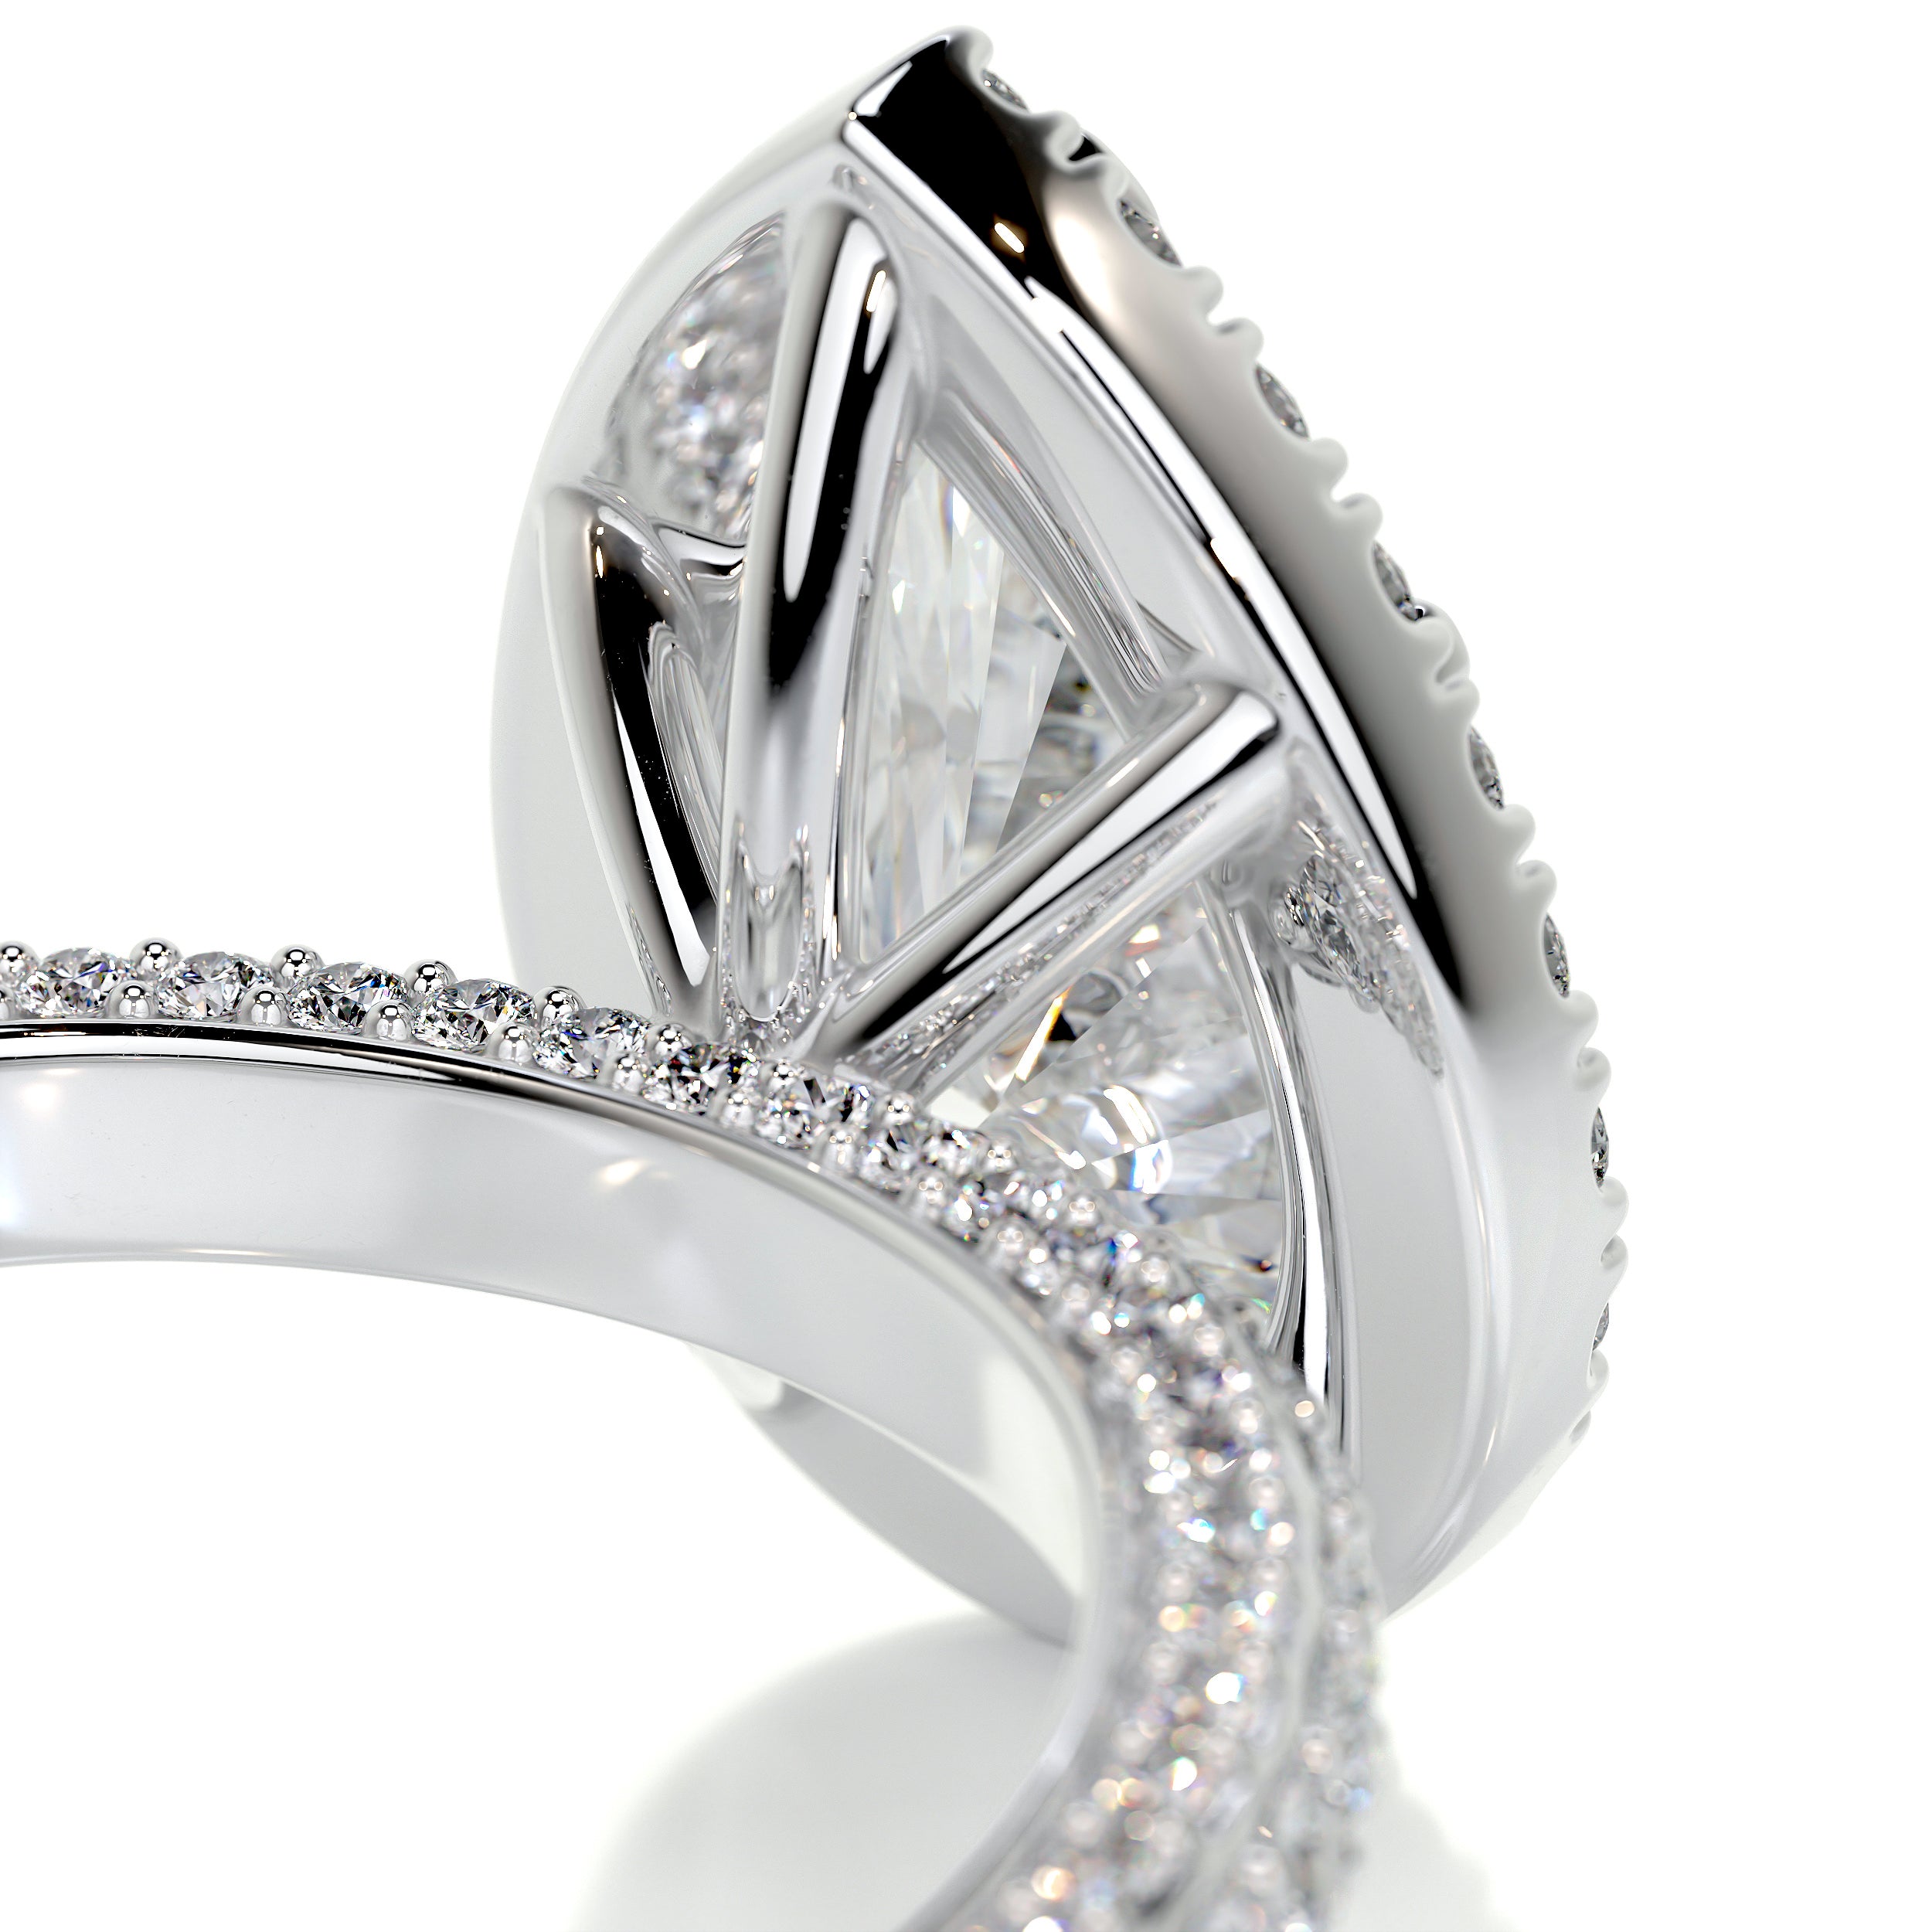 Beverly Diamond Engagement Ring -14K White Gold